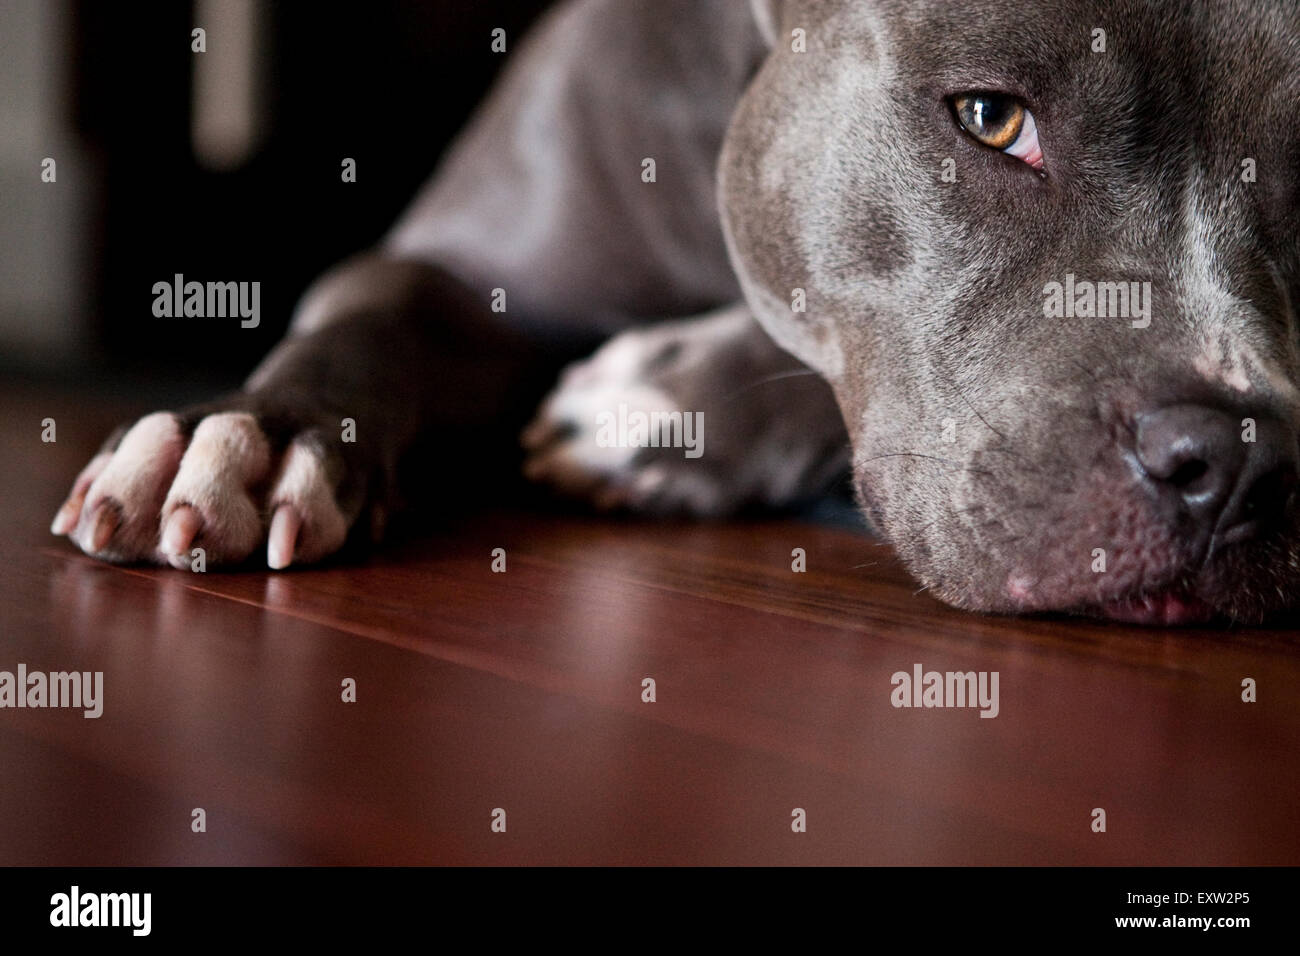 Seductive close up portrait, ground eye level, blue pitbull Stock Photo